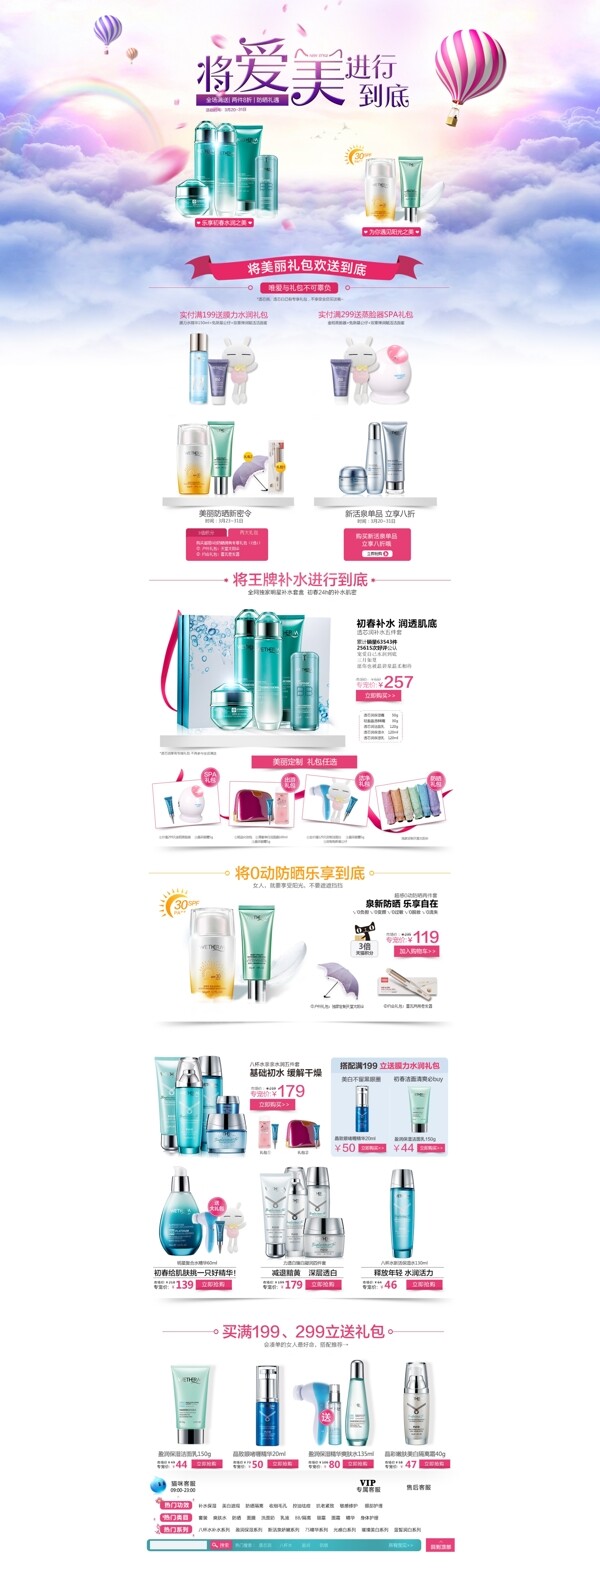 温碧泉化妆品广告图